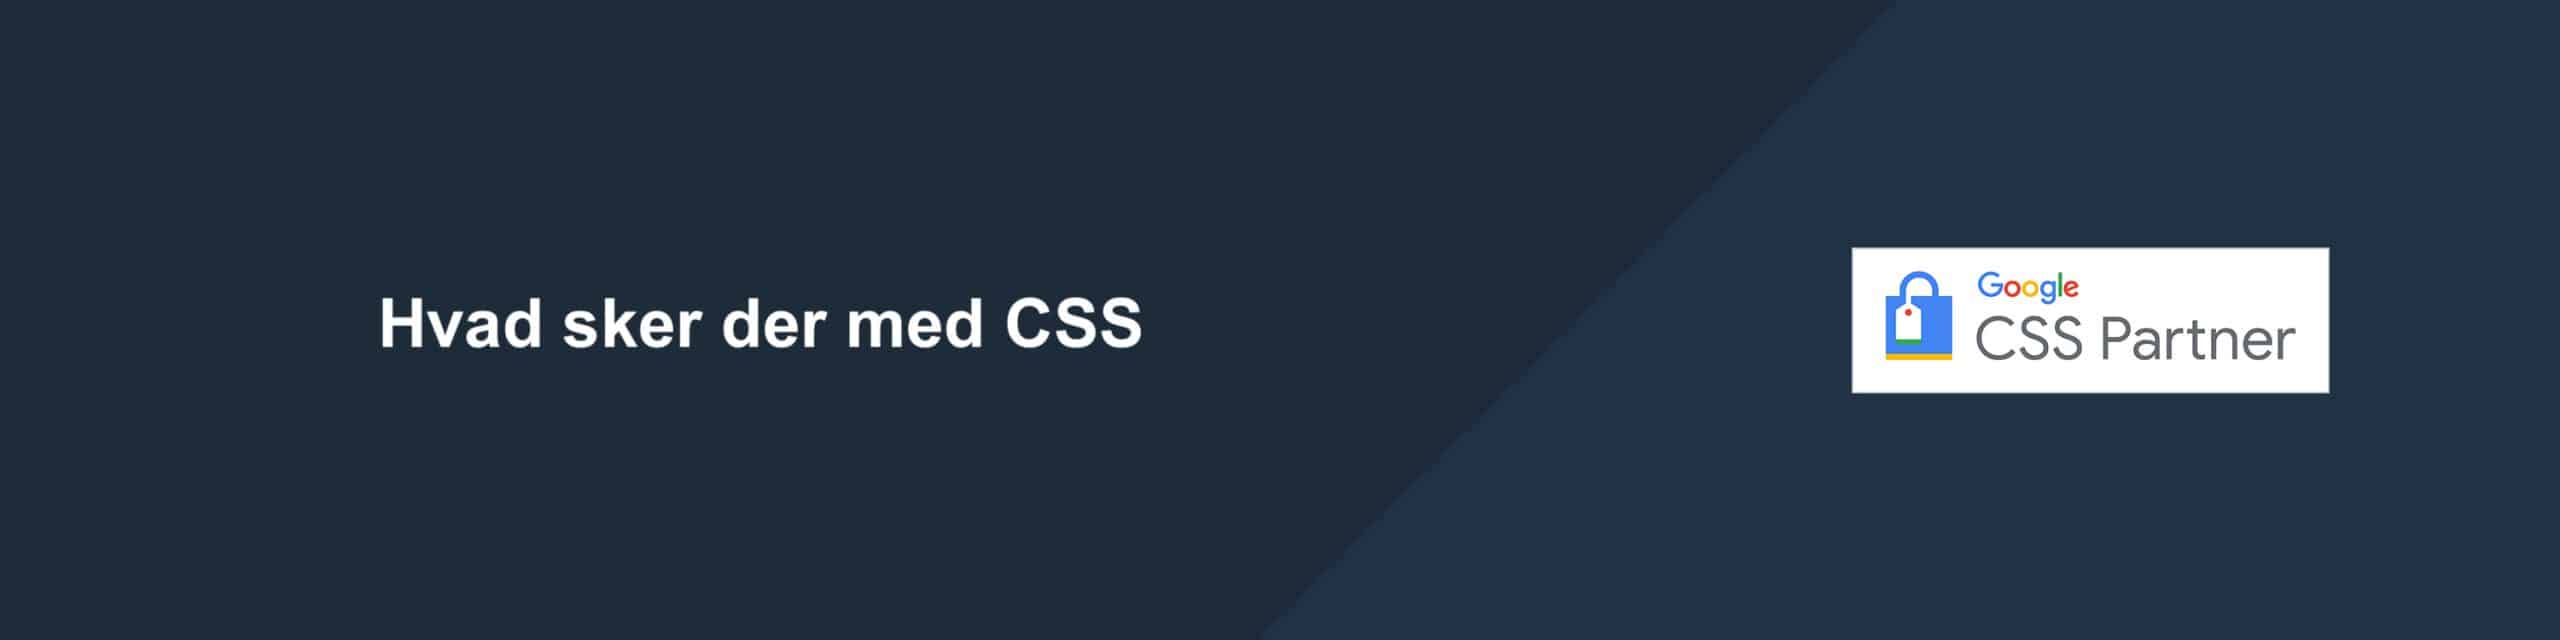 Hvad sker der i fremtiden med CSS